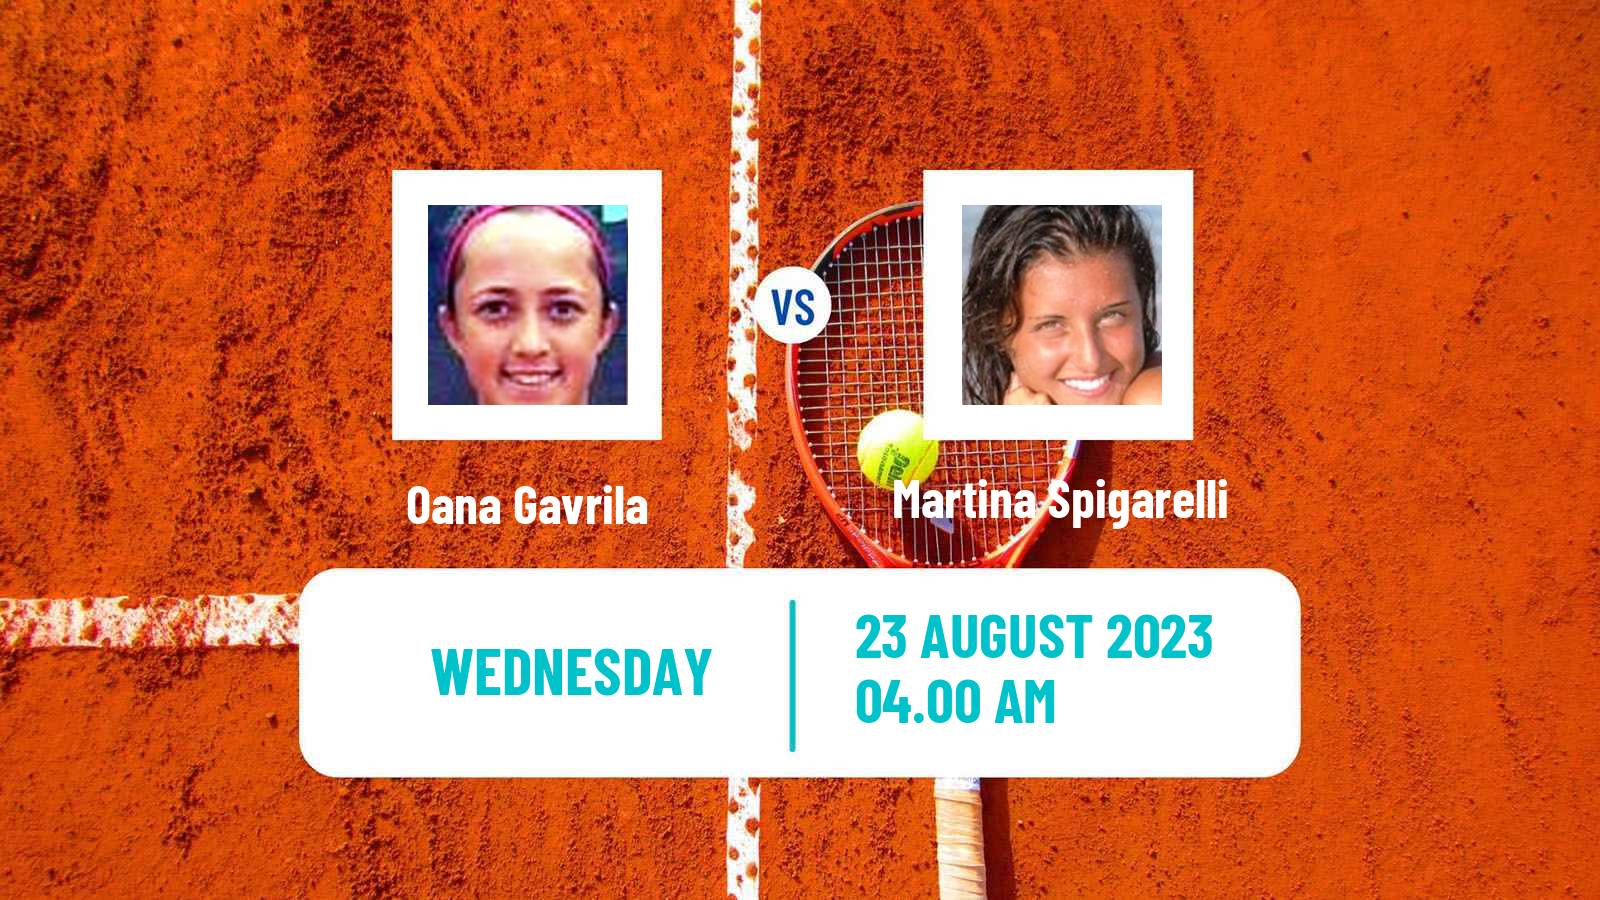 Tennis ITF W25 Bydgoszcz Women Oana Gavrila - Martina Spigarelli